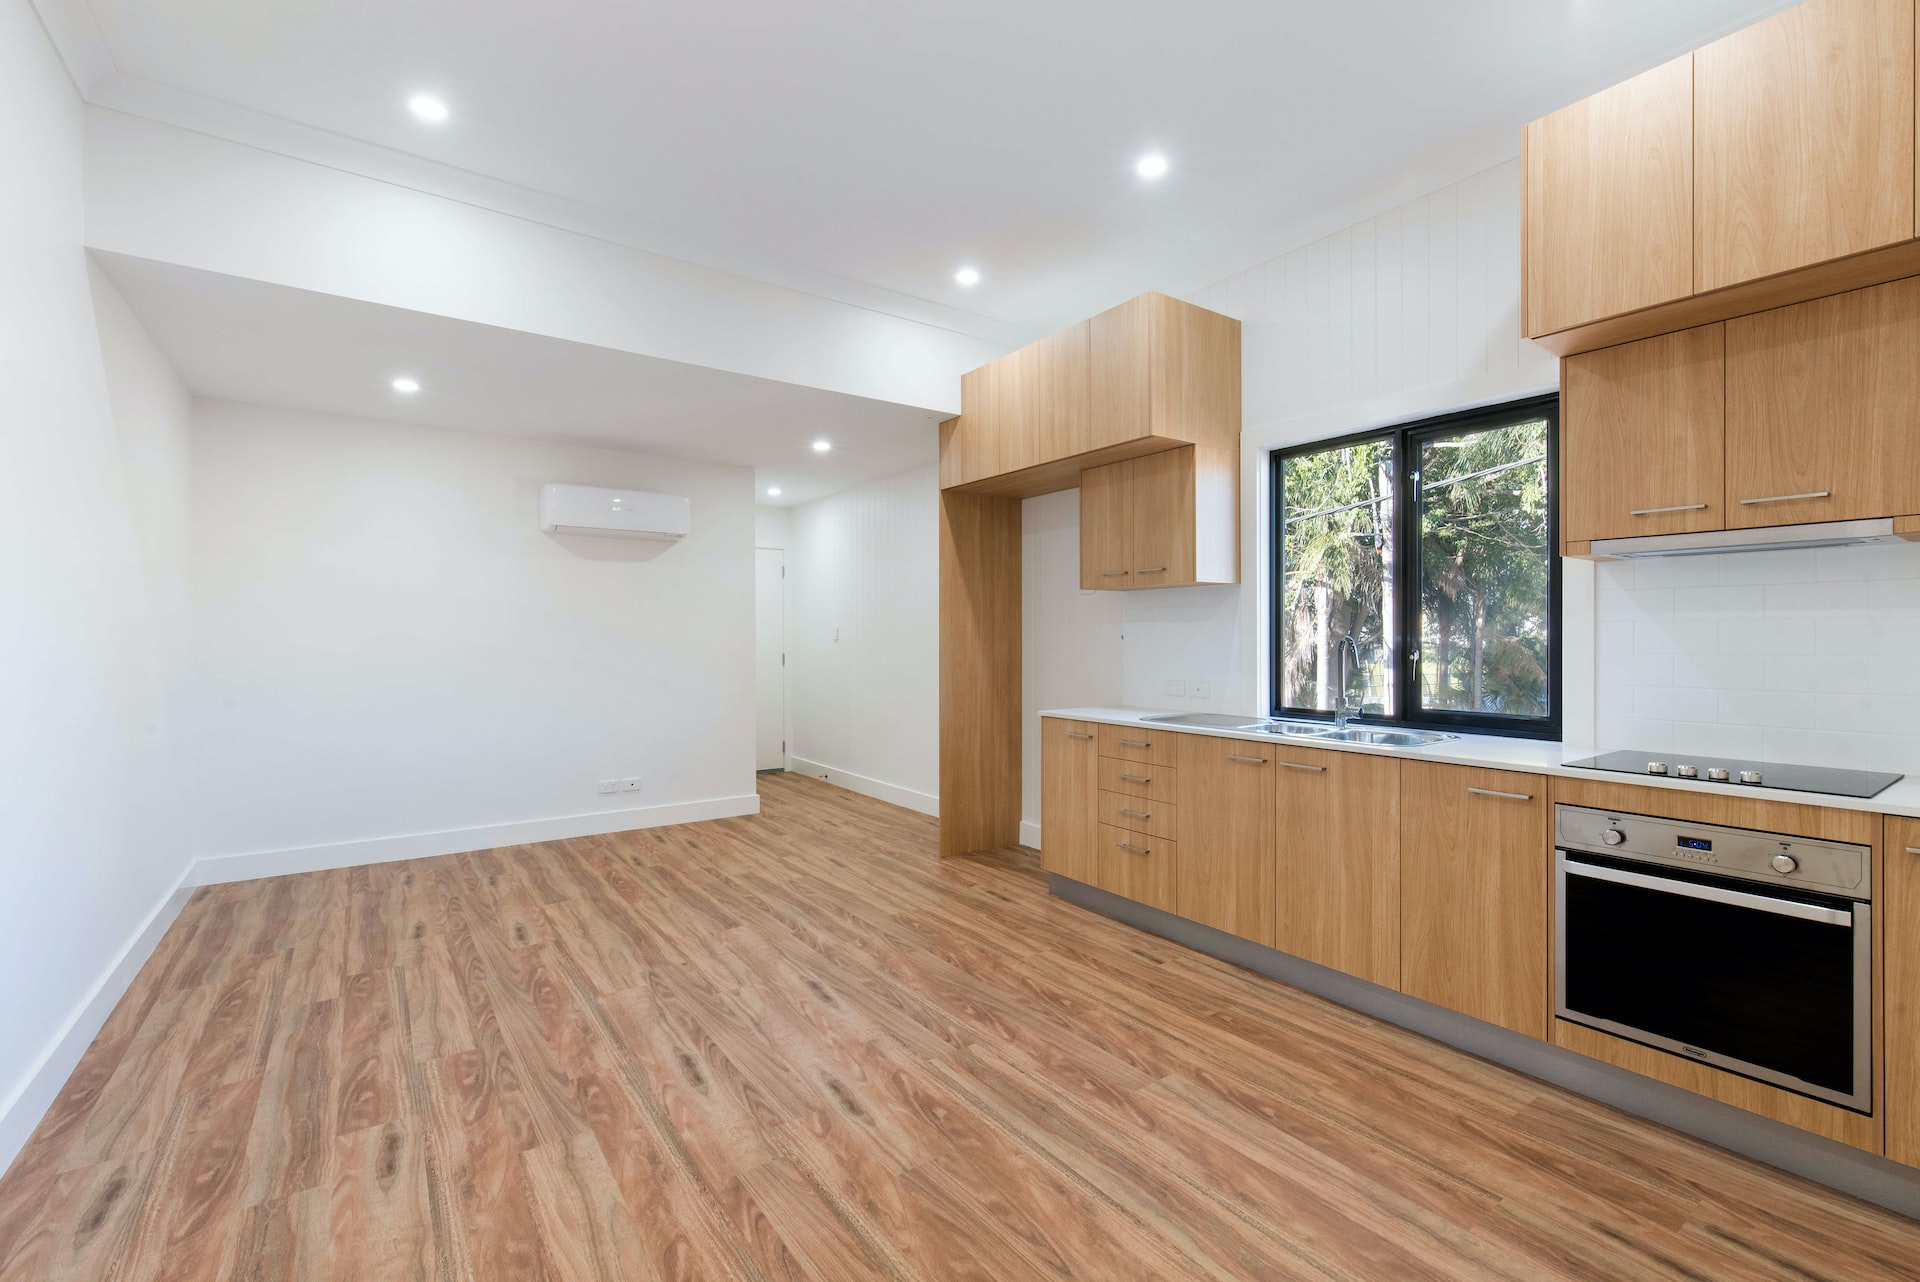 Wohnung mit offener Modulküche, großen Fenstern, Holzfußboden und Zwischendecke